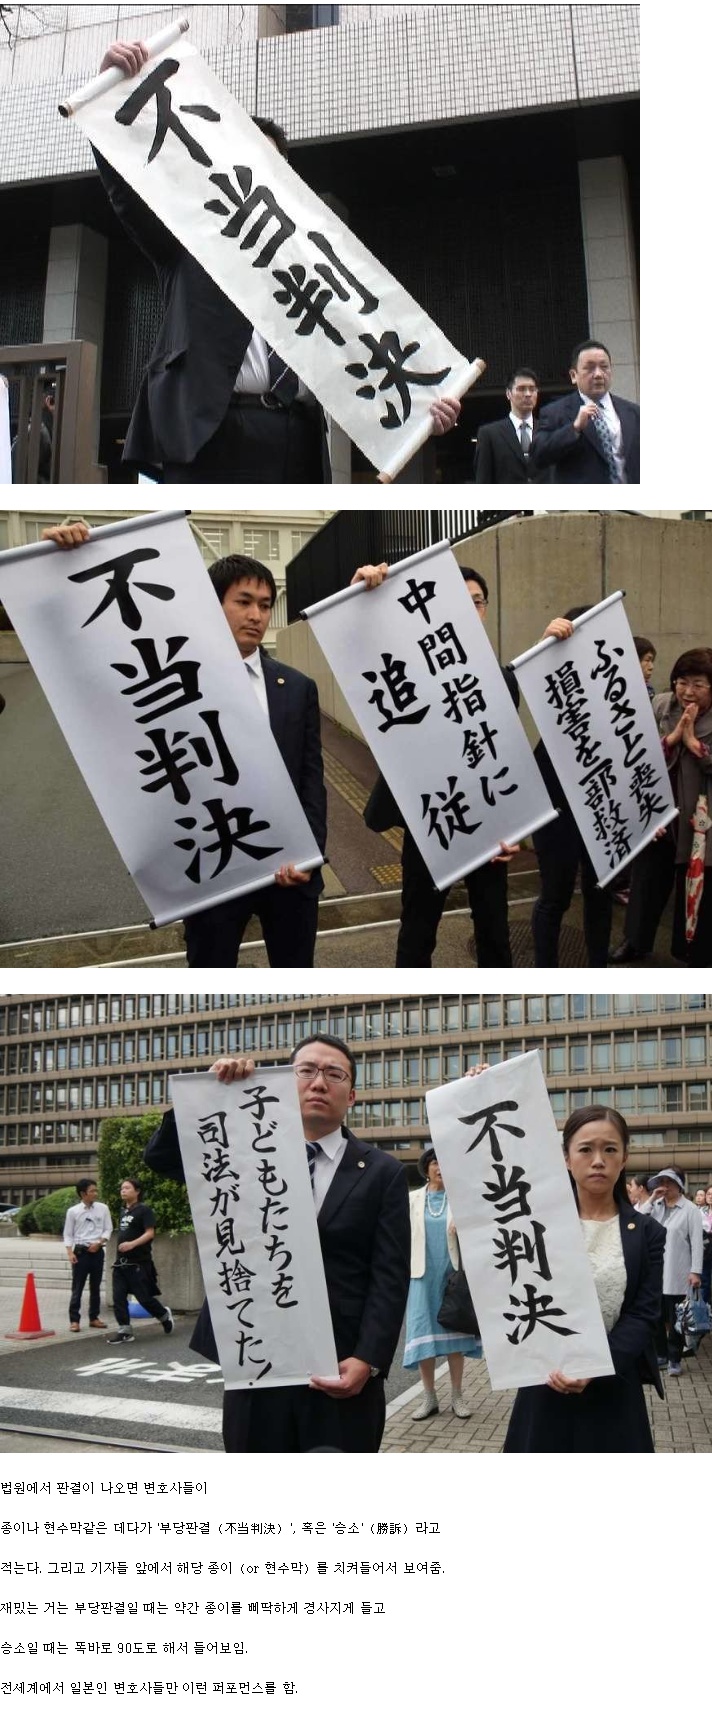 일본 변호사들의 판결 후 공지 사항